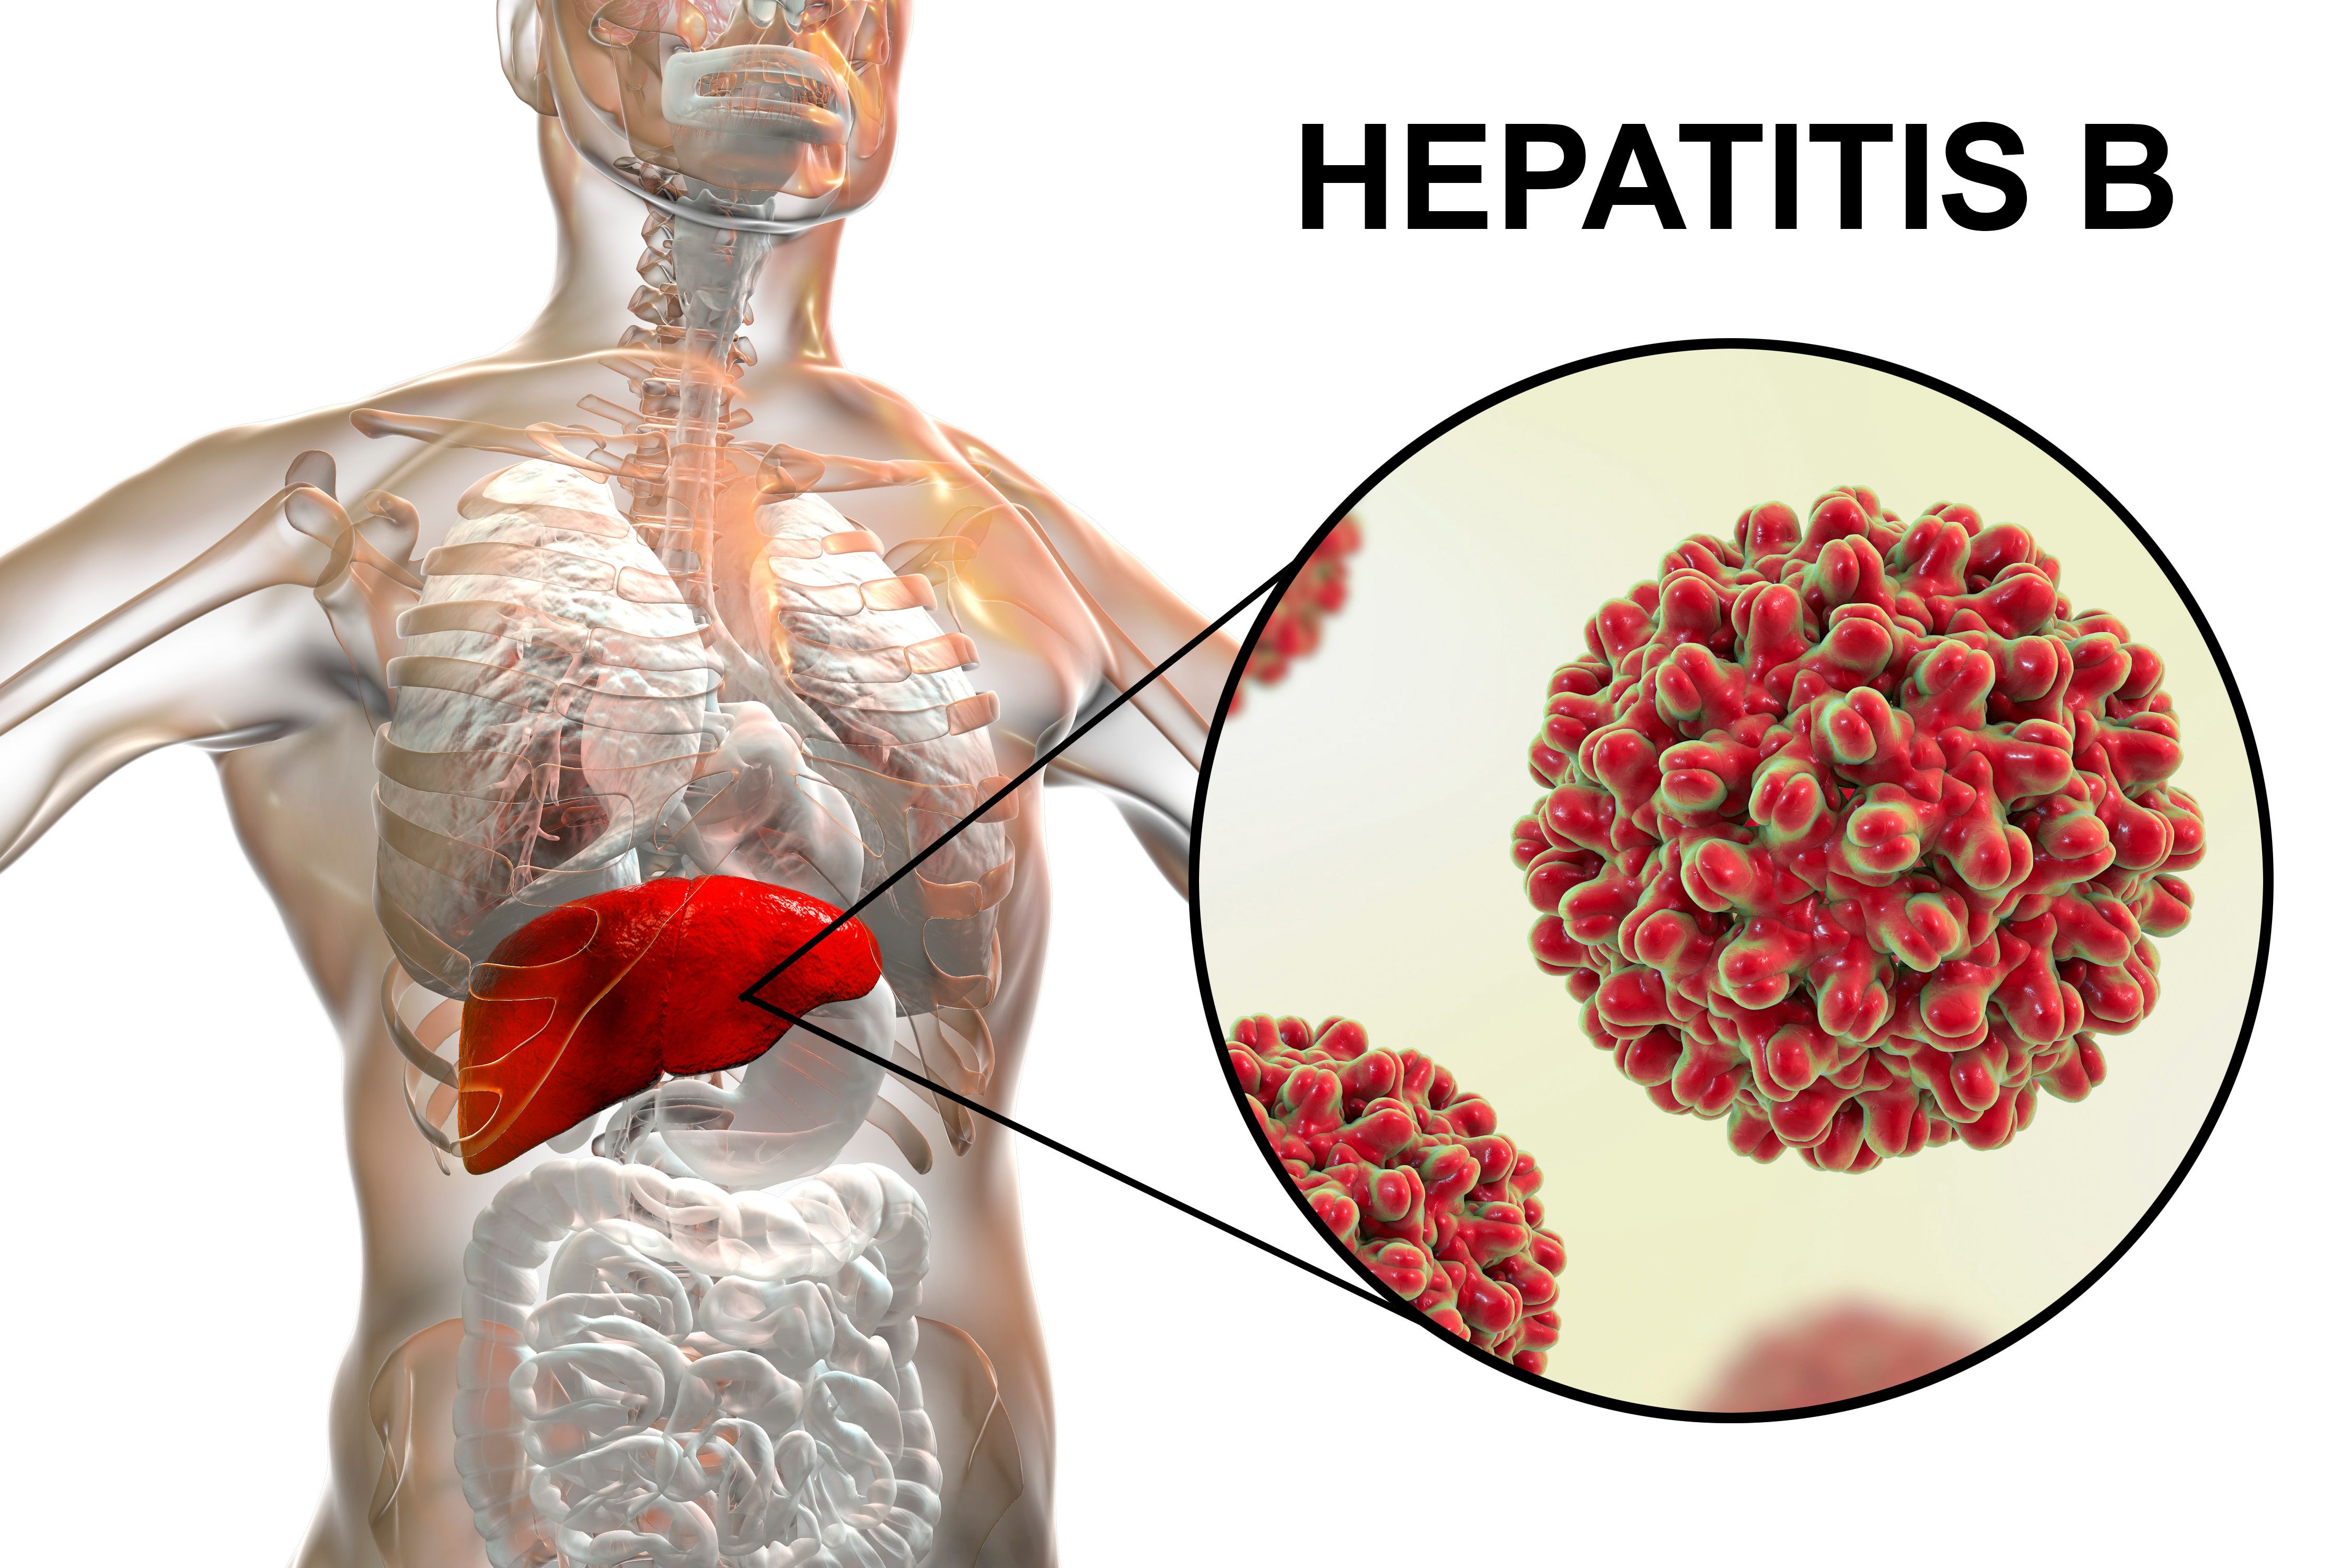 La vida de los pacientes afectada física, social y emocionalmente por la hepatitis B